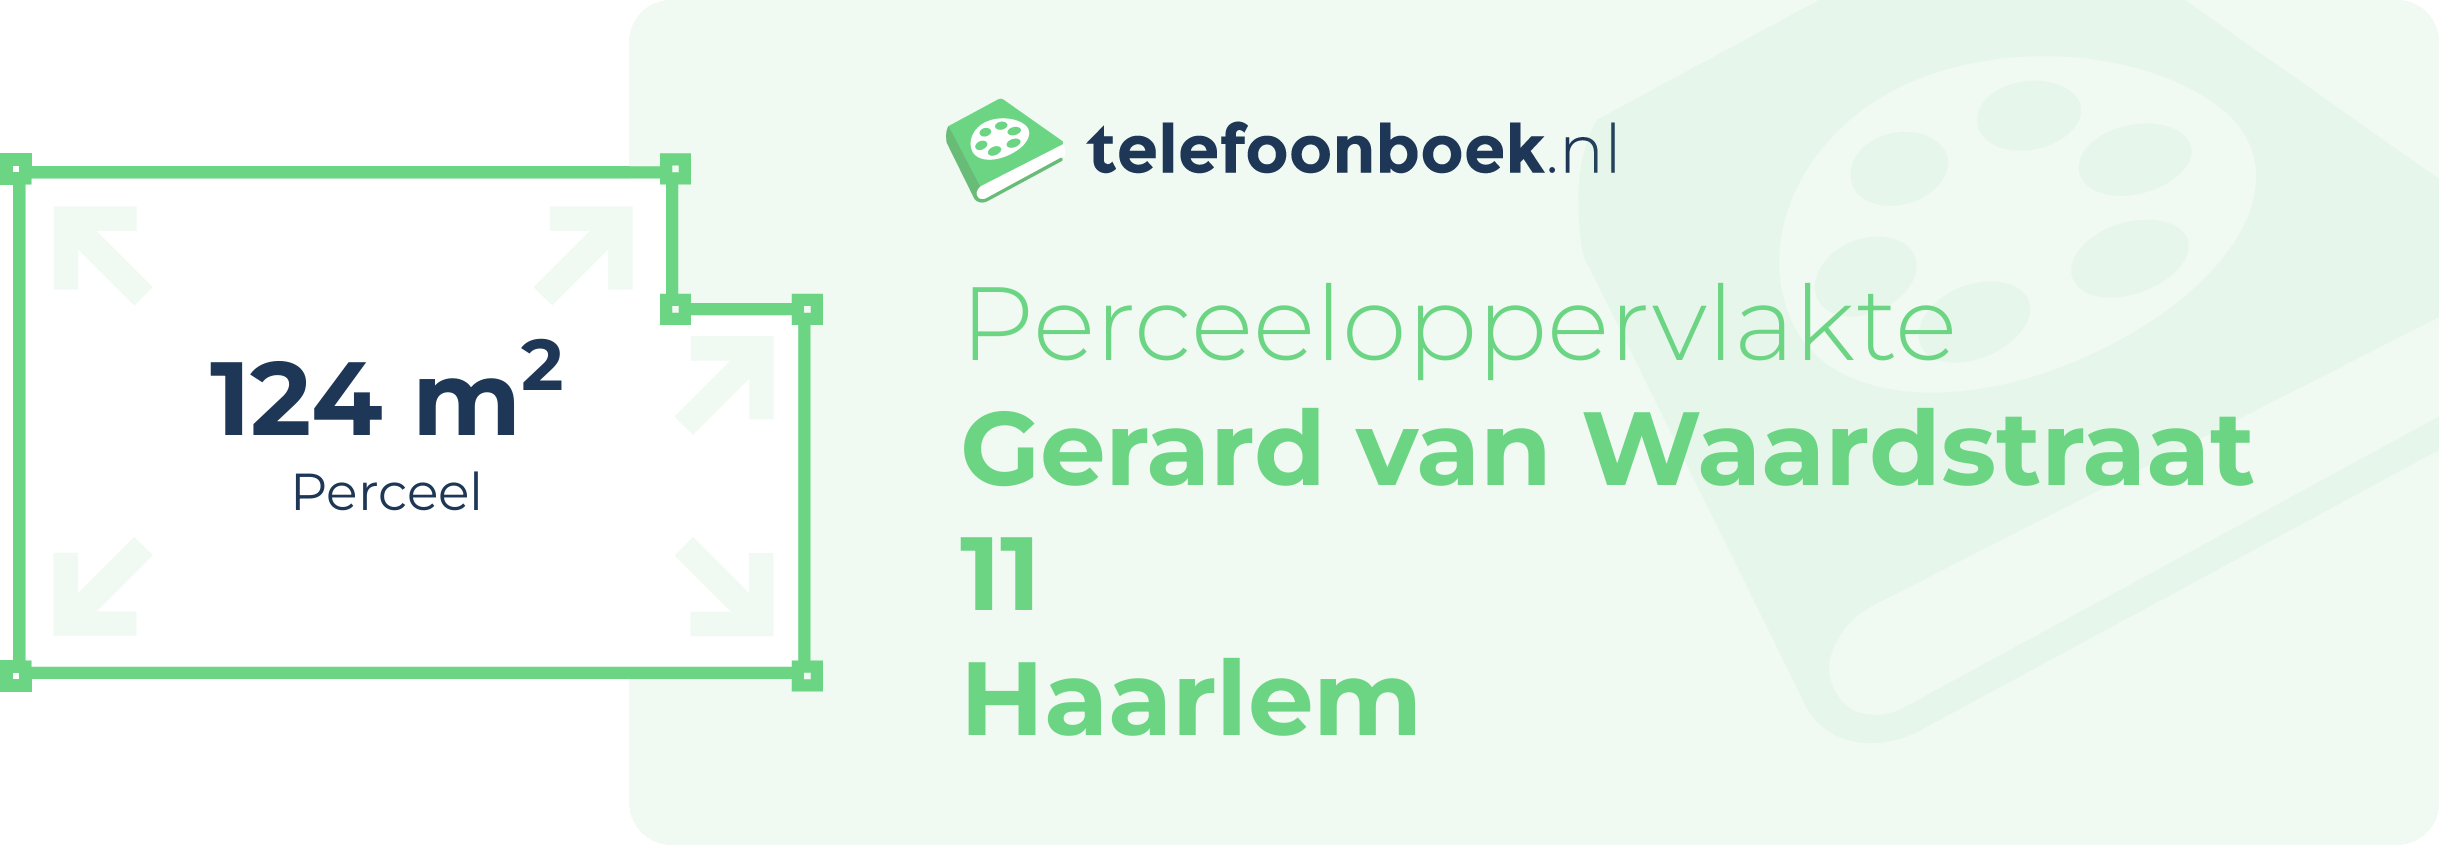 Perceeloppervlakte Gerard Van Waardstraat 11 Haarlem